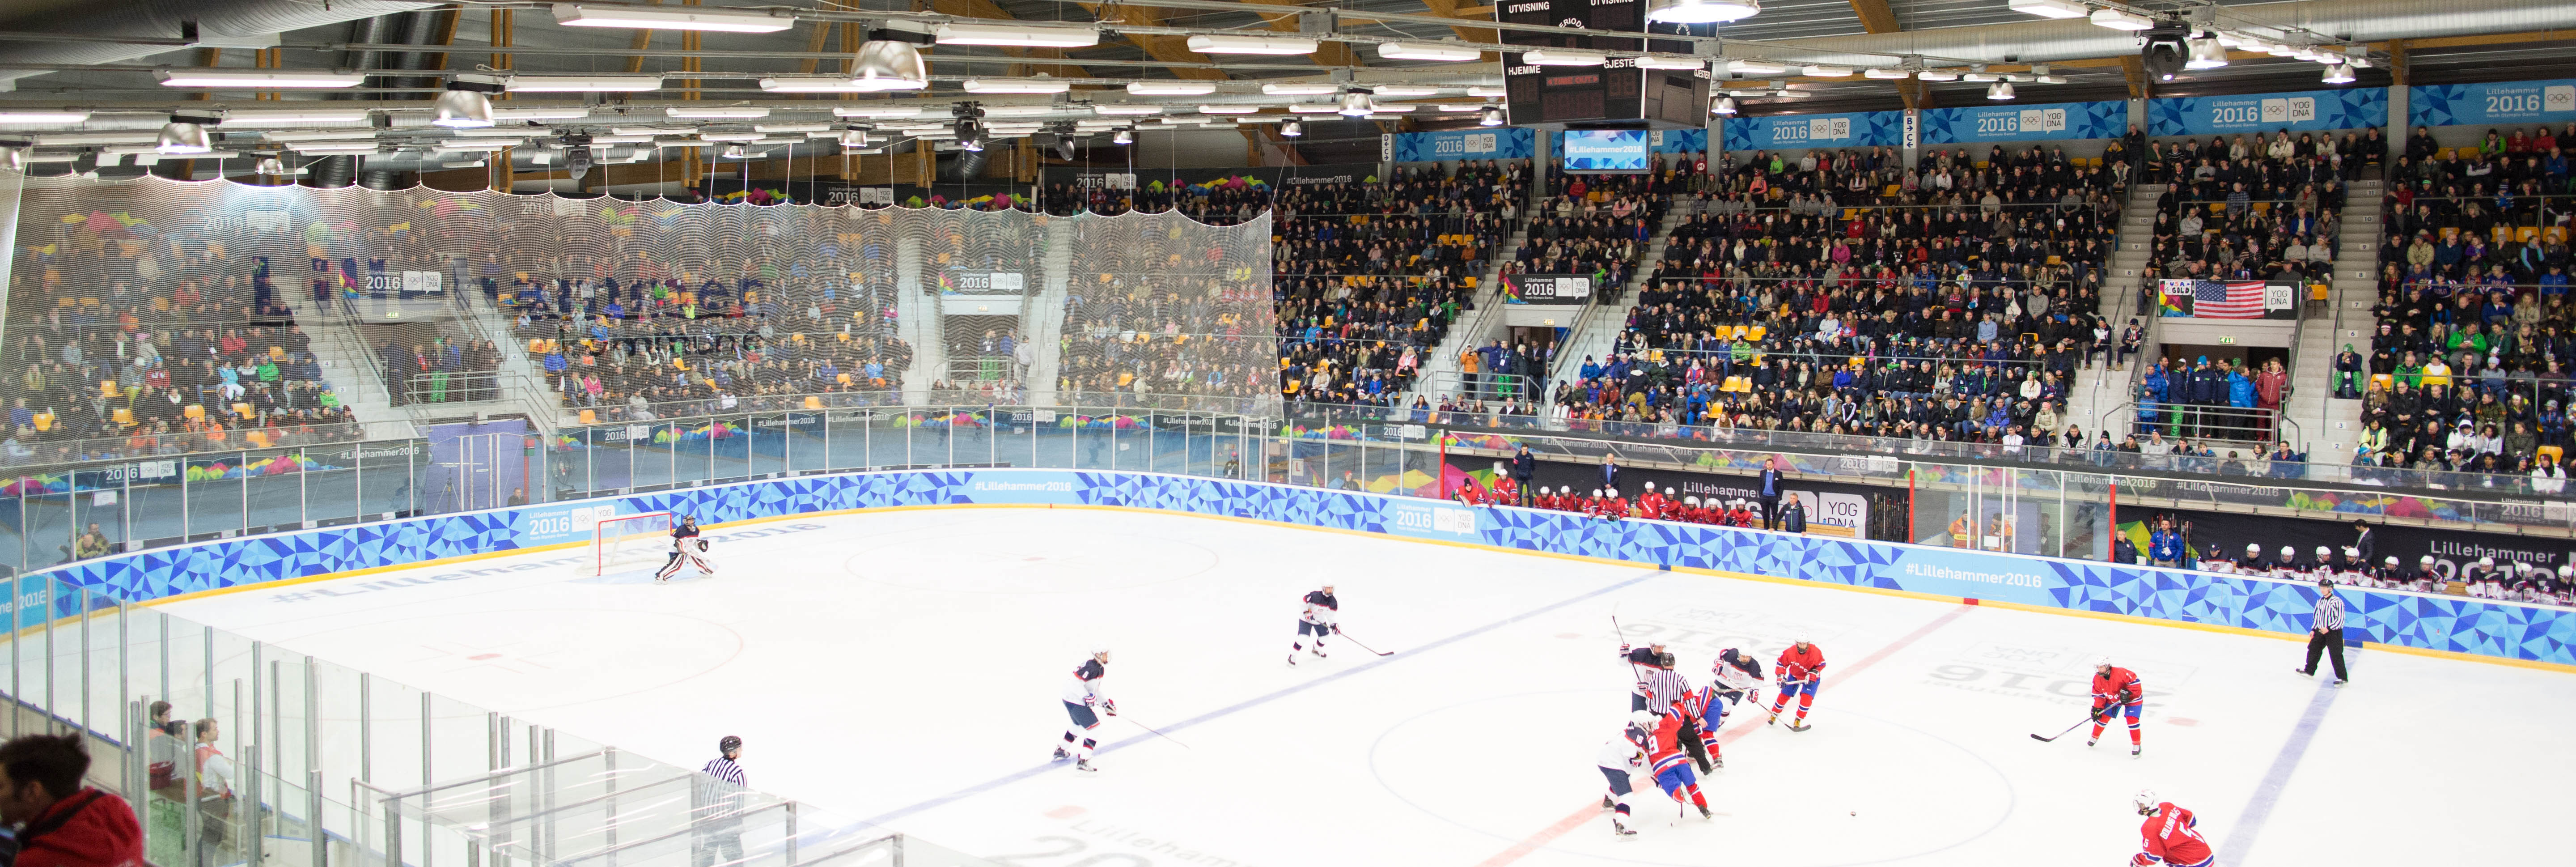 Lillehammer 2016 fullt hus på ishockey